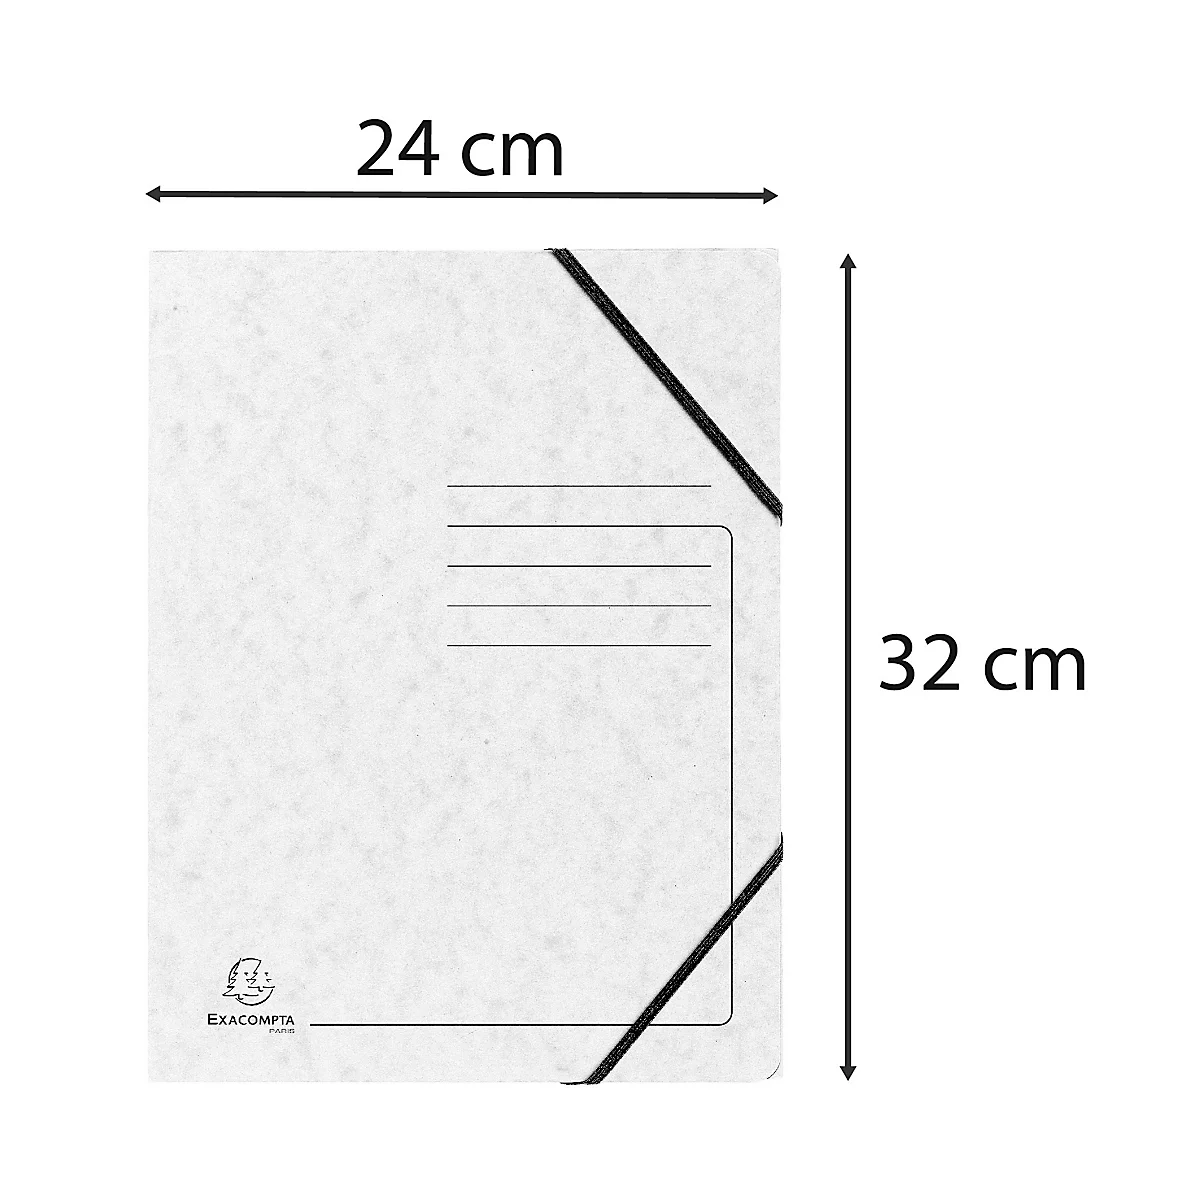 Exacompta Sammelmappe, DIN A4, mit Gummizug, 3 Klappen, beschriftbar, Colorspan-Karton, 355 g/m², weiß